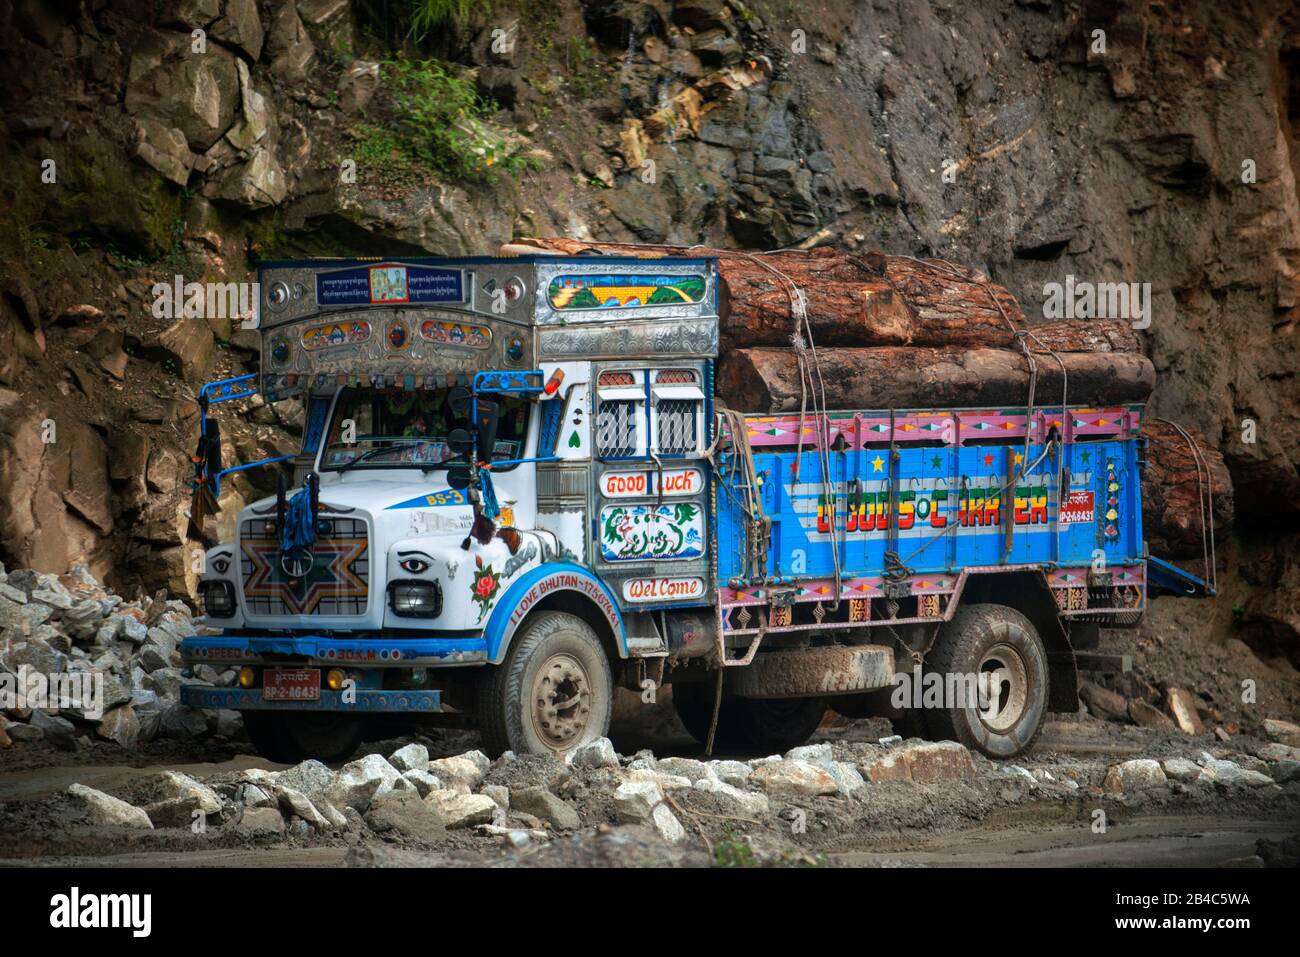 Troncs d'arbres camion de transport vieux véhicule décoré Tata camion de transport de l'essence sur le Yotong la Pass, Yotongla Pass, quartier de Bumthang, Bhoutan Banque D'Images